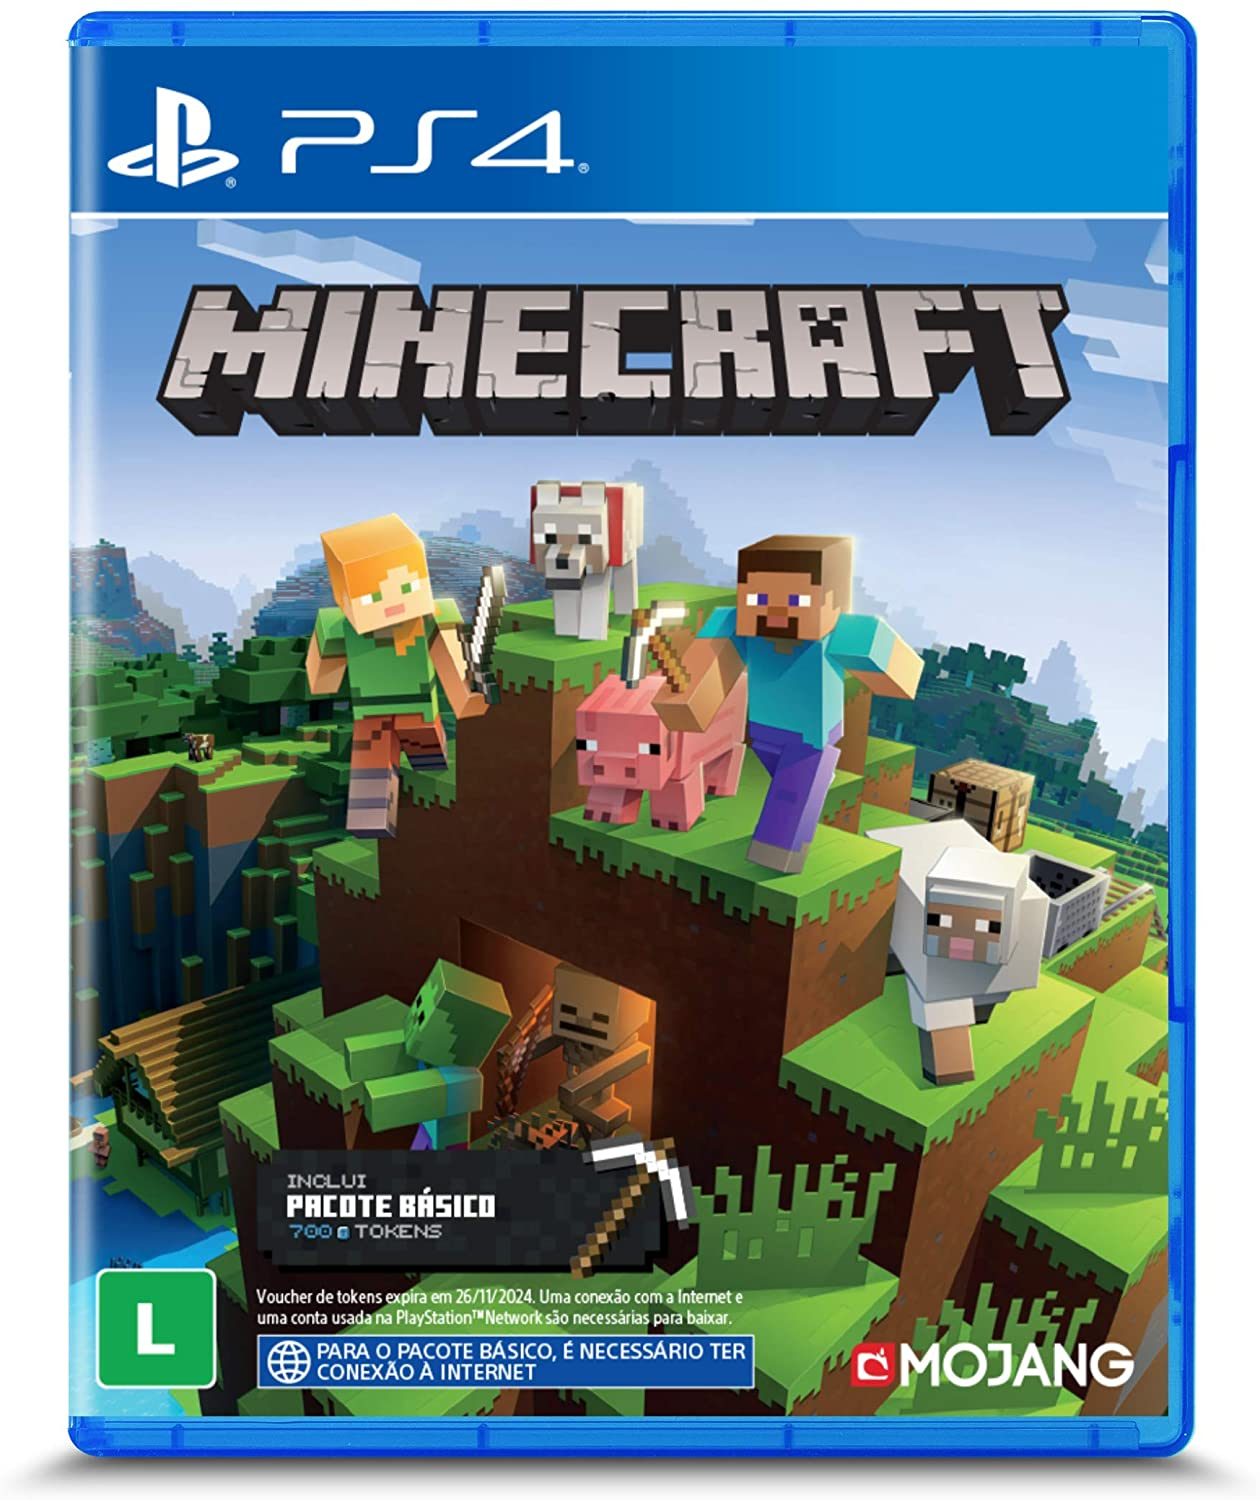 Jogo Minecraft Vr Ps4 Modo Incluido, Jogo de Videogame Sony Nunca Usado  91749937